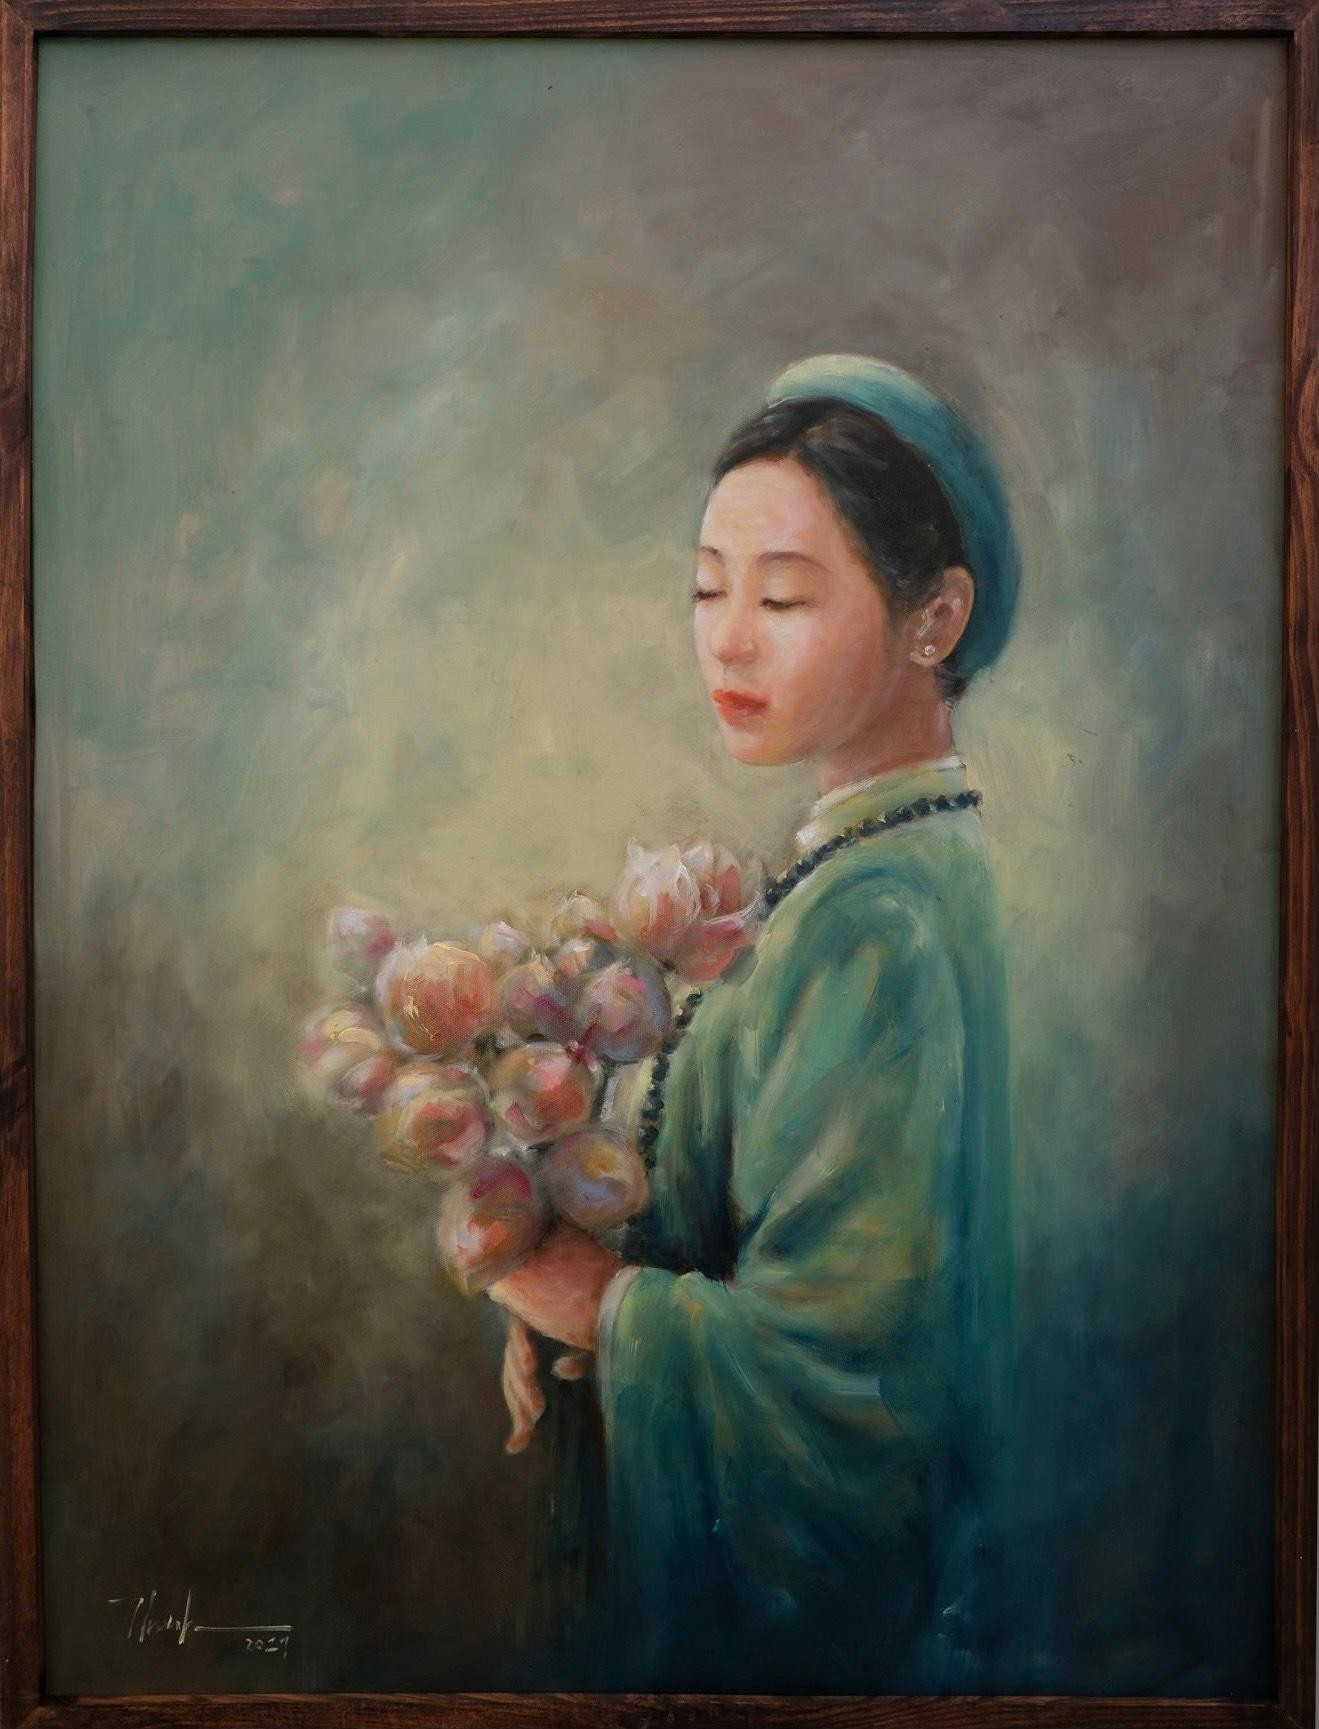 Bộ tranh thiếu nữ và hoa sen làm mê đắm lòng người của chàng họa sĩ Bắc Giang ảnh 9